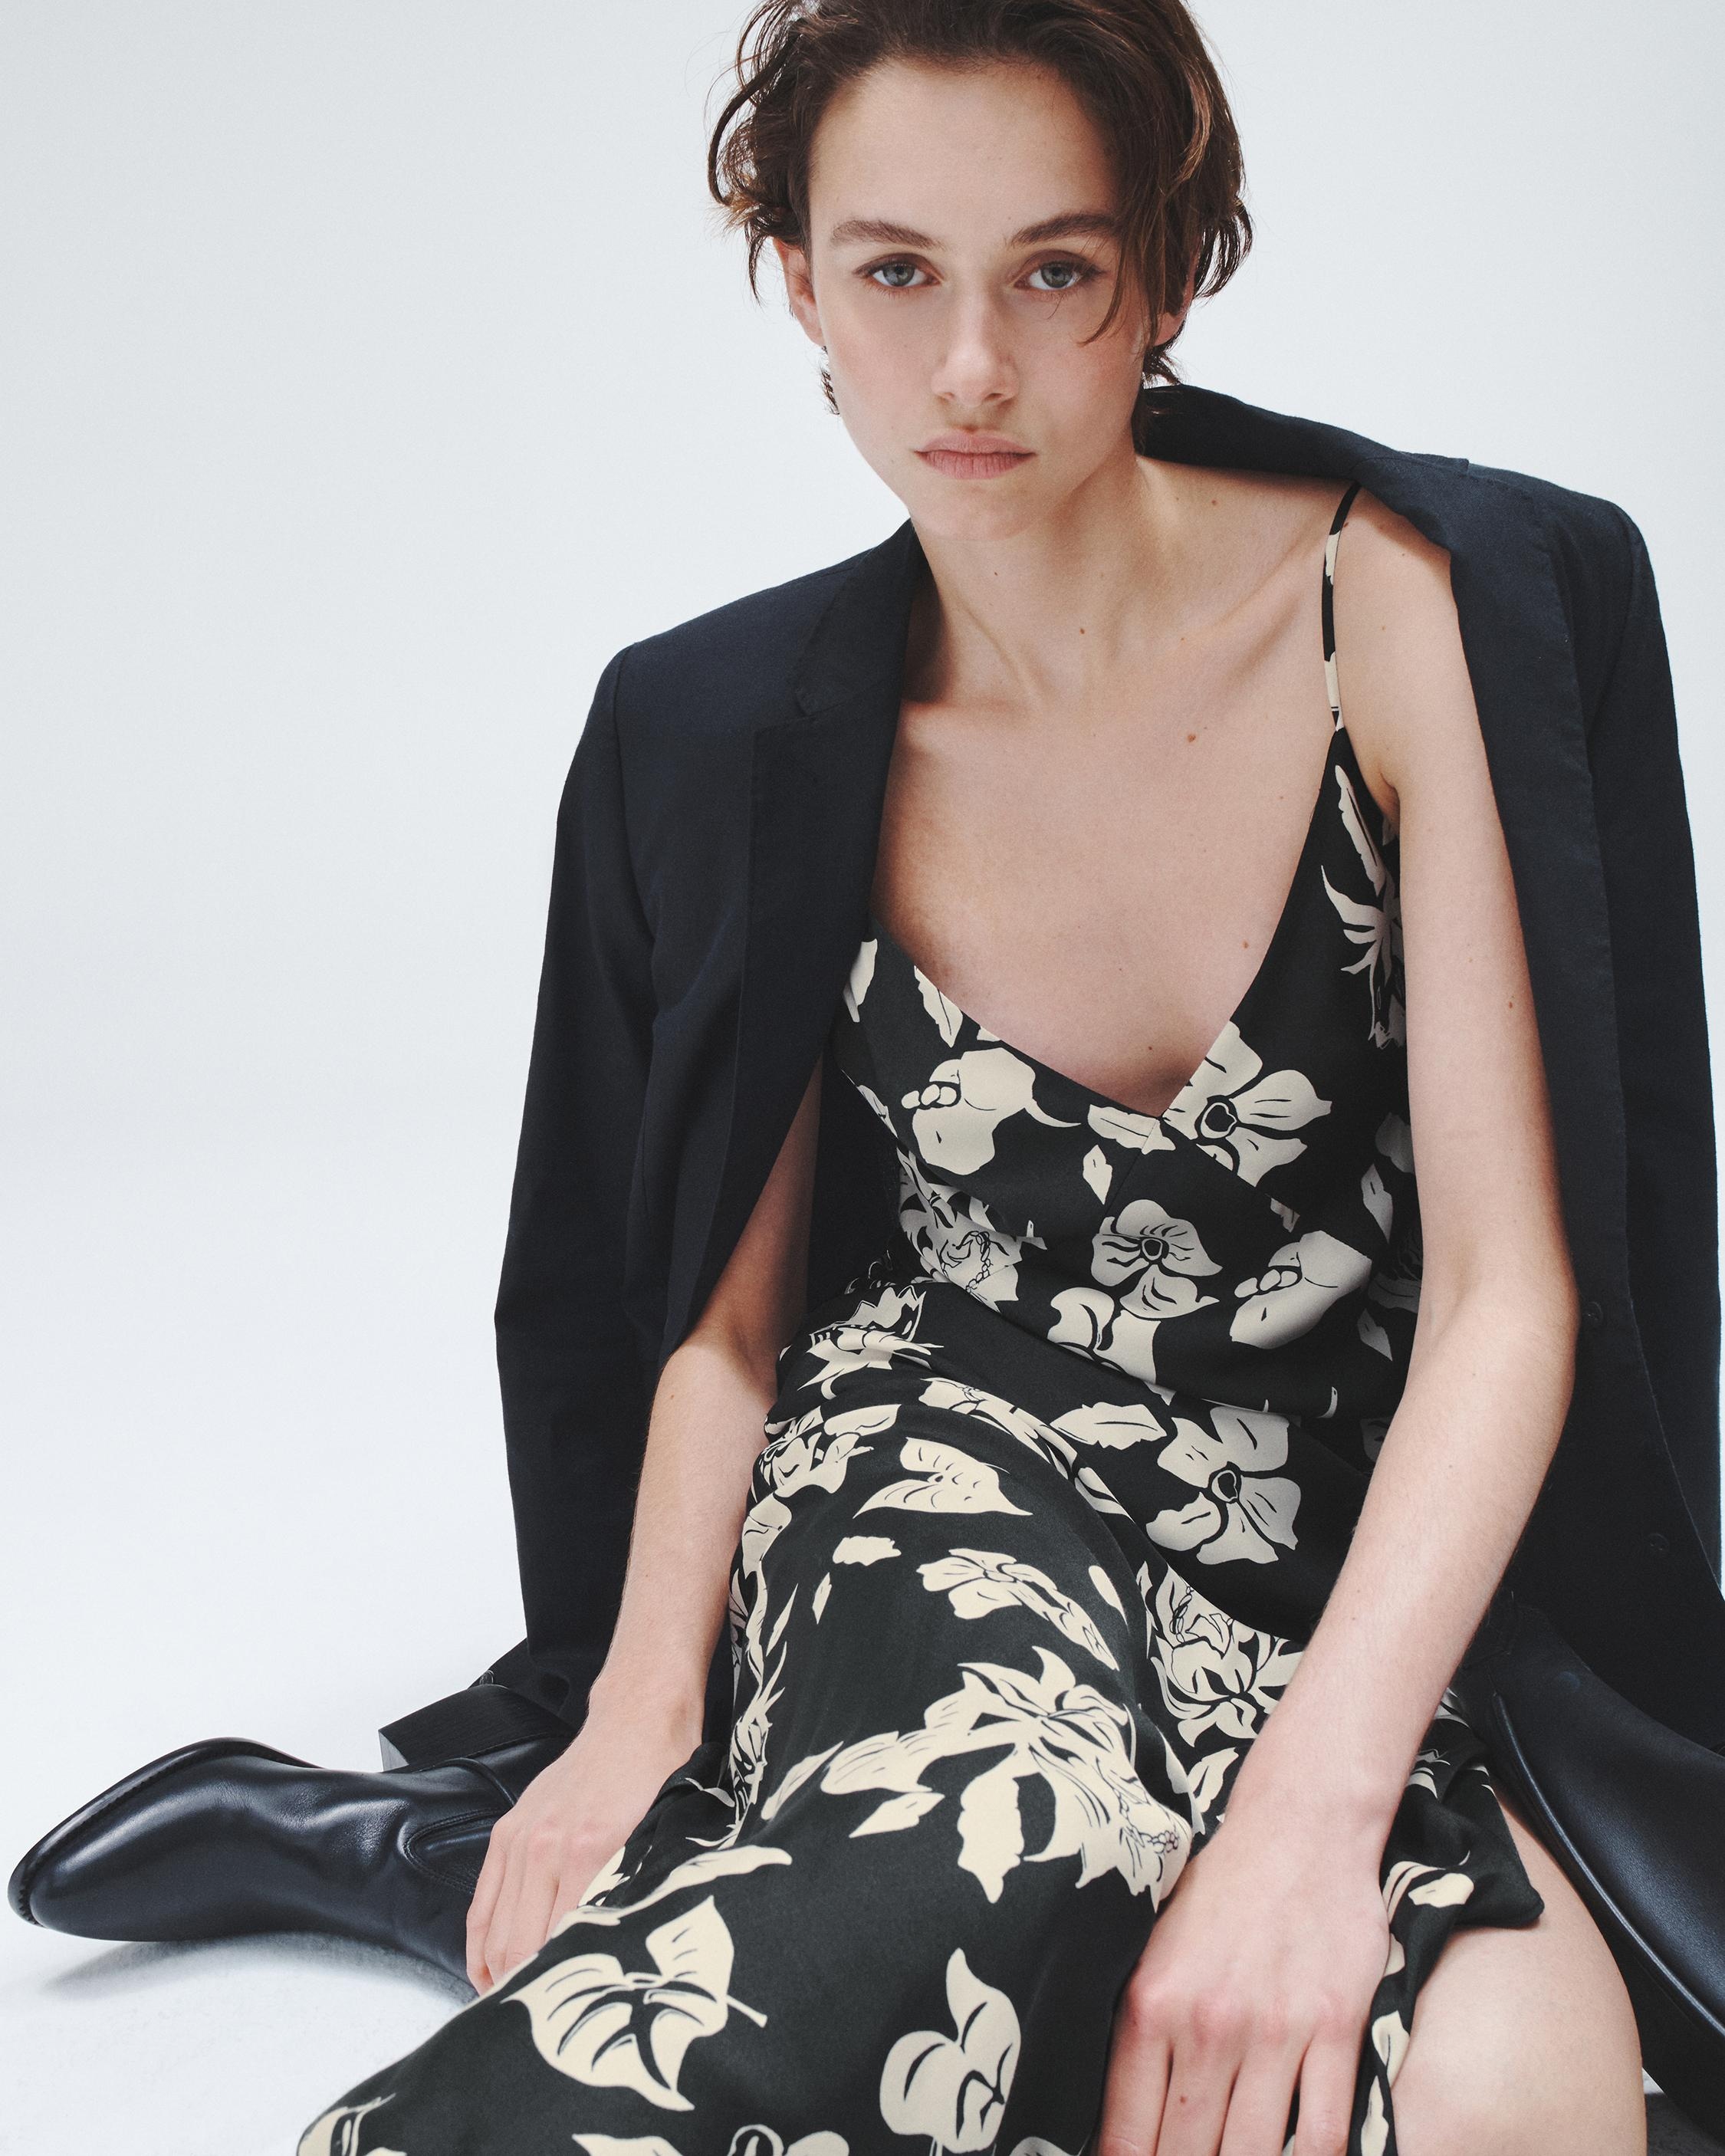 Larissa Printed Silk Dress
Maxi - 6